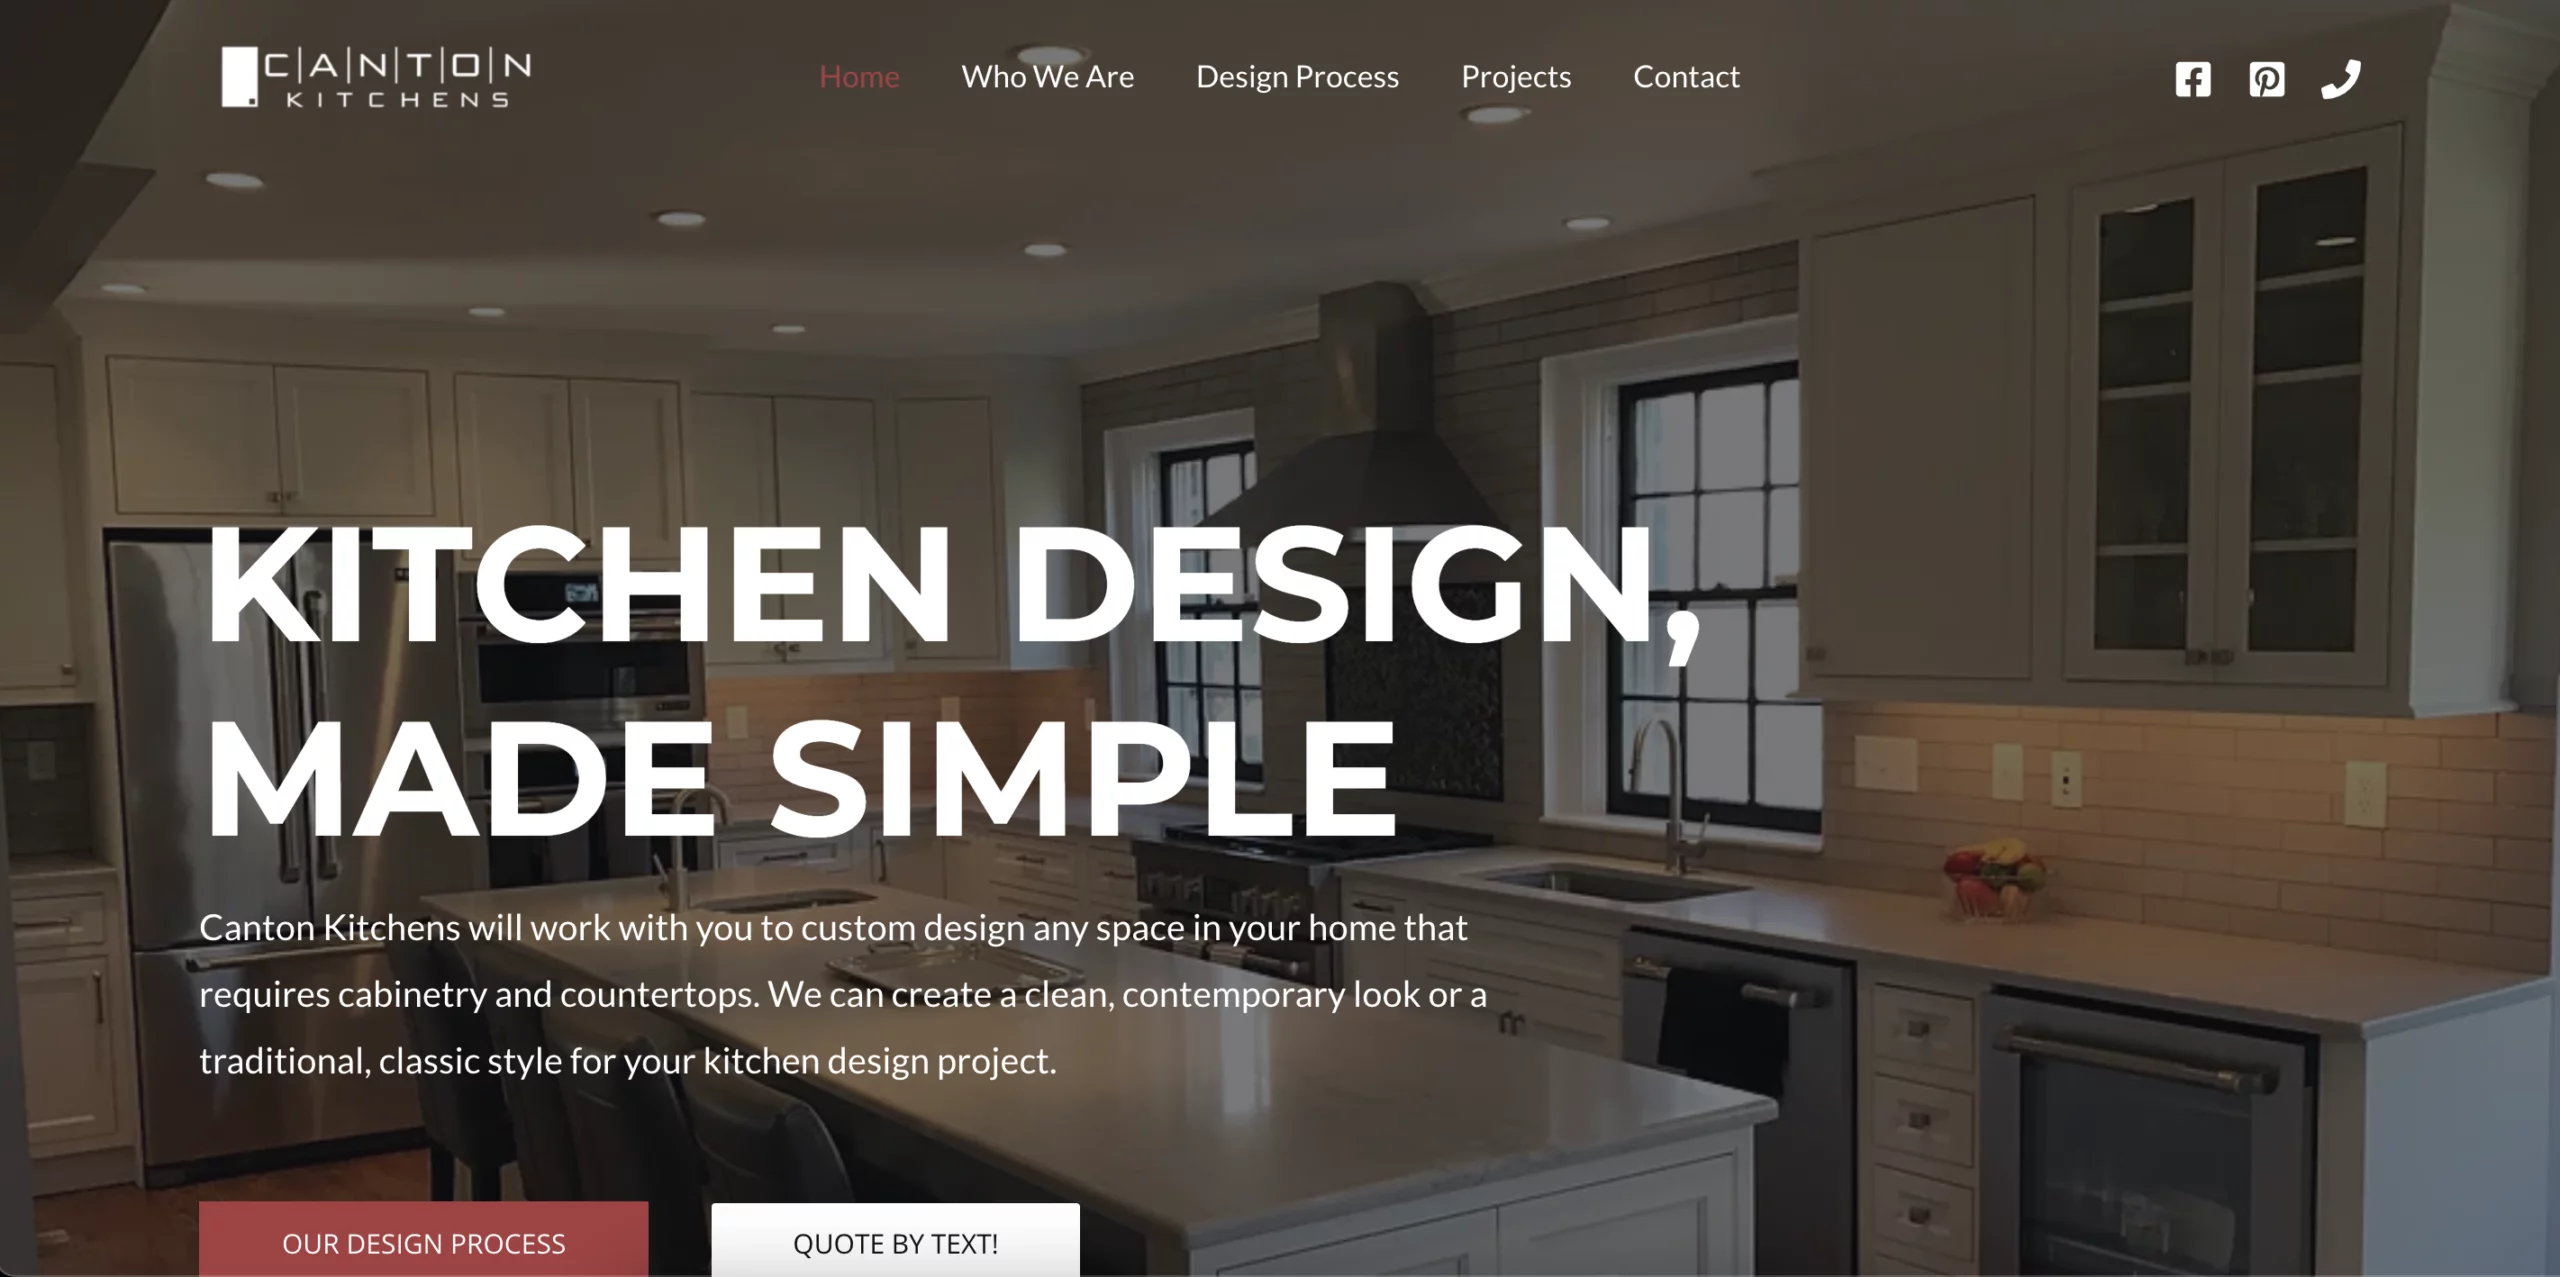 Web Design & SEO Client - Canton Kitchens